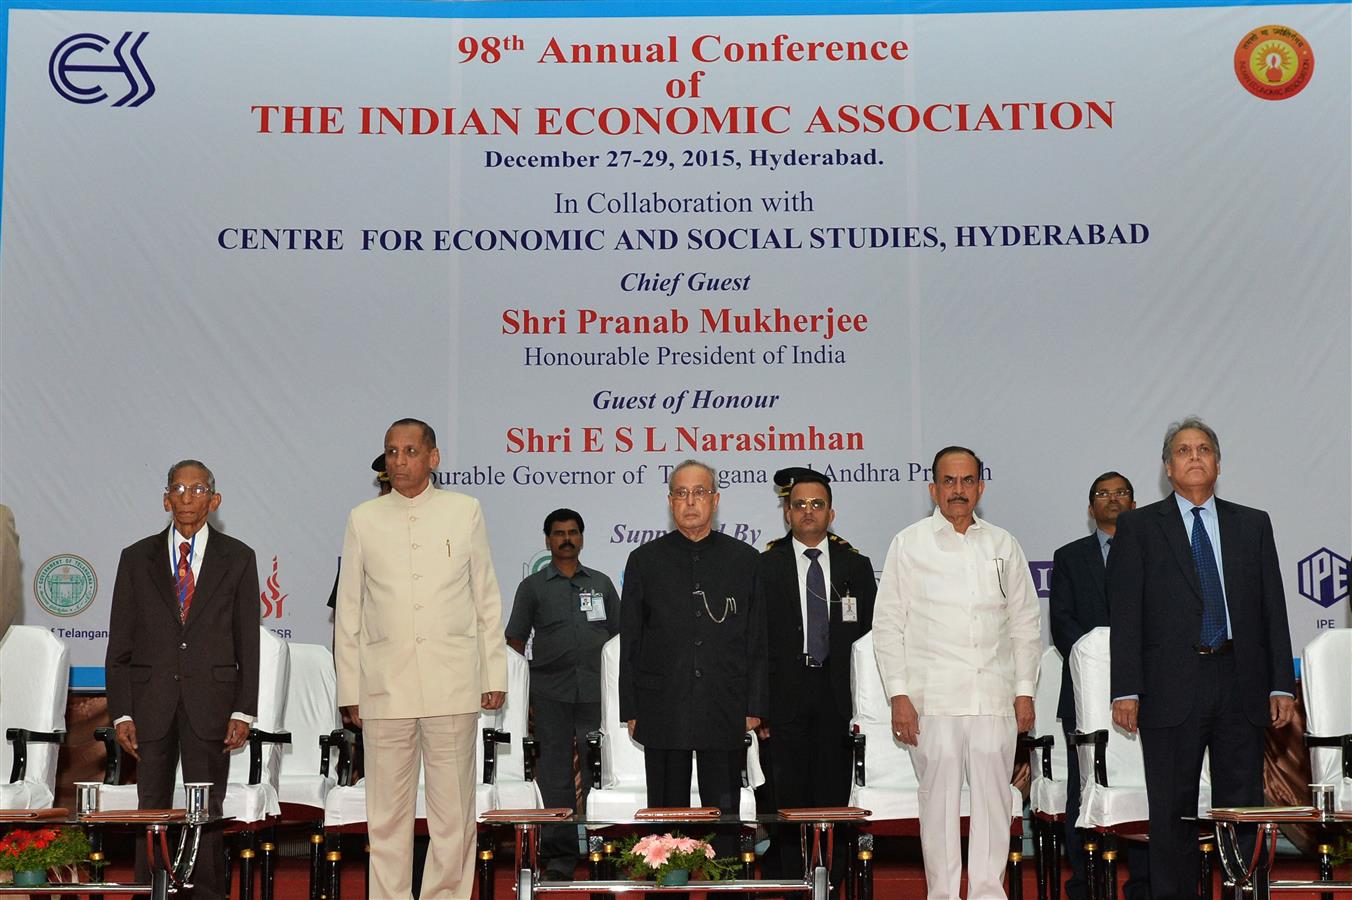 भारत के राष्ट्रपति, श्री प्रणब मुखर्जी 27 दिसम्बर, 2015 को हैदराबाद में भारतीय आर्थिक एसोसिएशन (आईईए) के 98वे वार्षिक सम्मेलन के उद्घाटन समारोह पर।